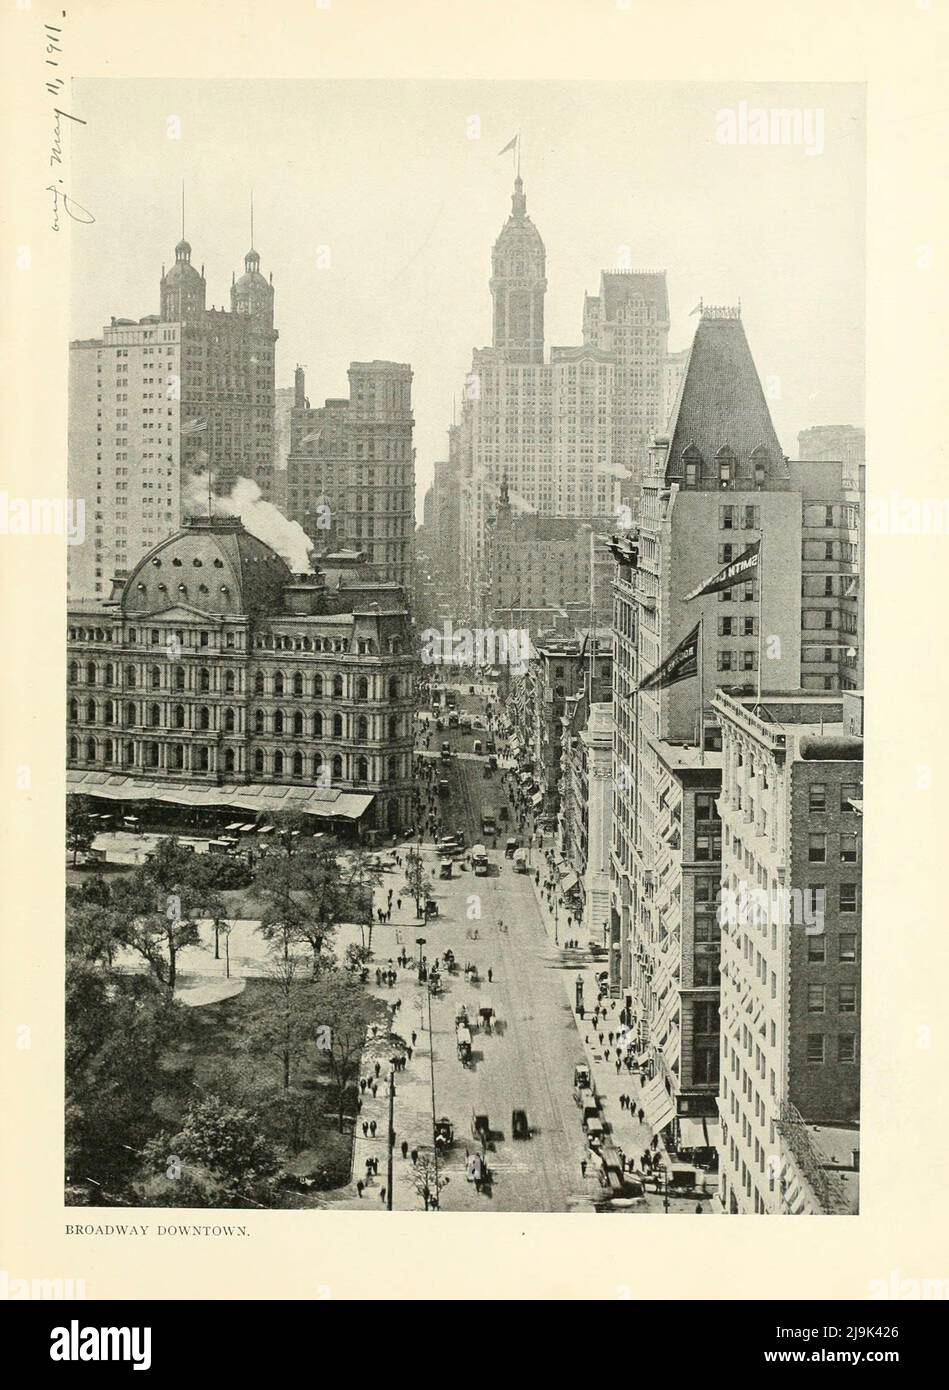 Broadway Downtown 1911 du livre ' New York Illustrated ' Date de publication 1911 Editeur New York : Success postal Card Co. Banque D'Images